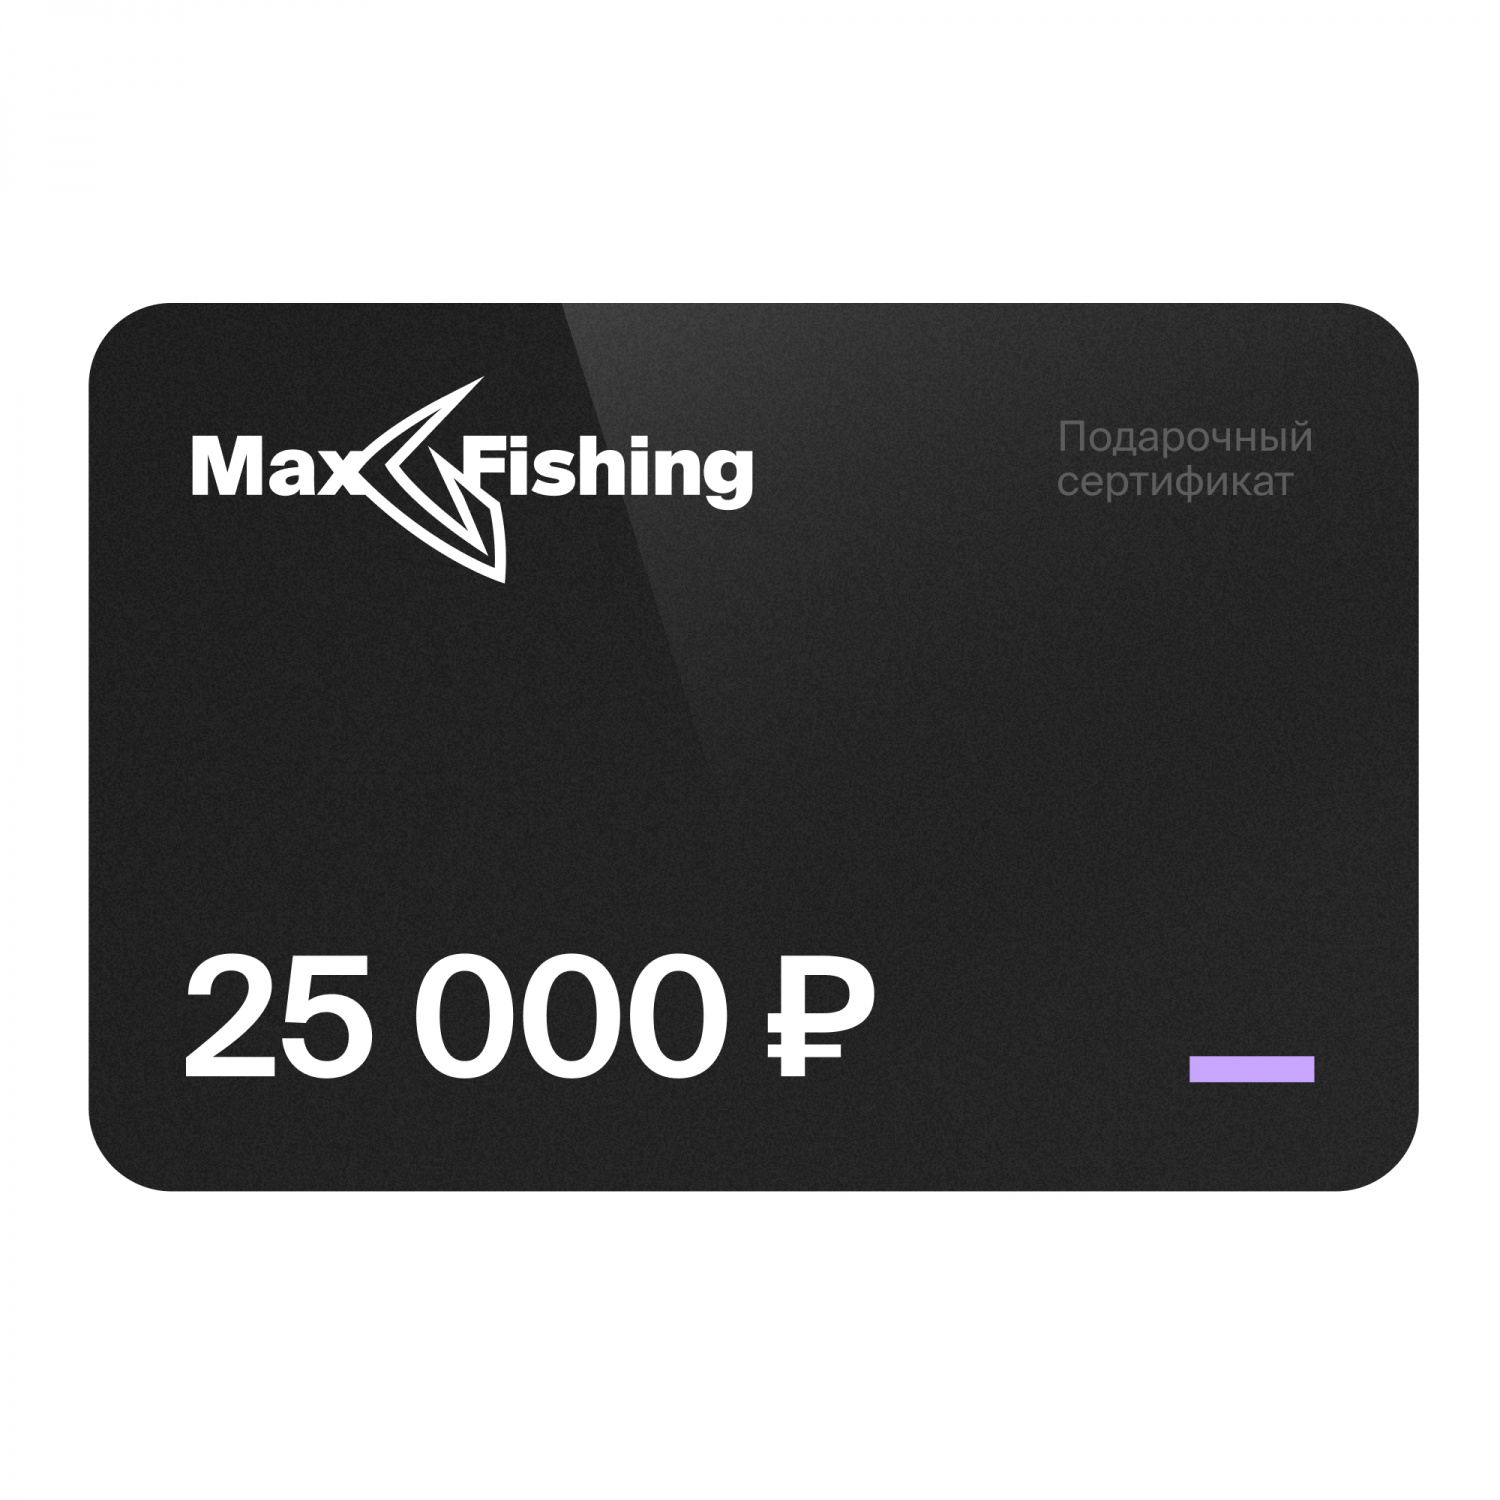 Подарочный сертификат MaxFishing 25 000 ₽ подарочный сертификат mr right на 5 000 рублей